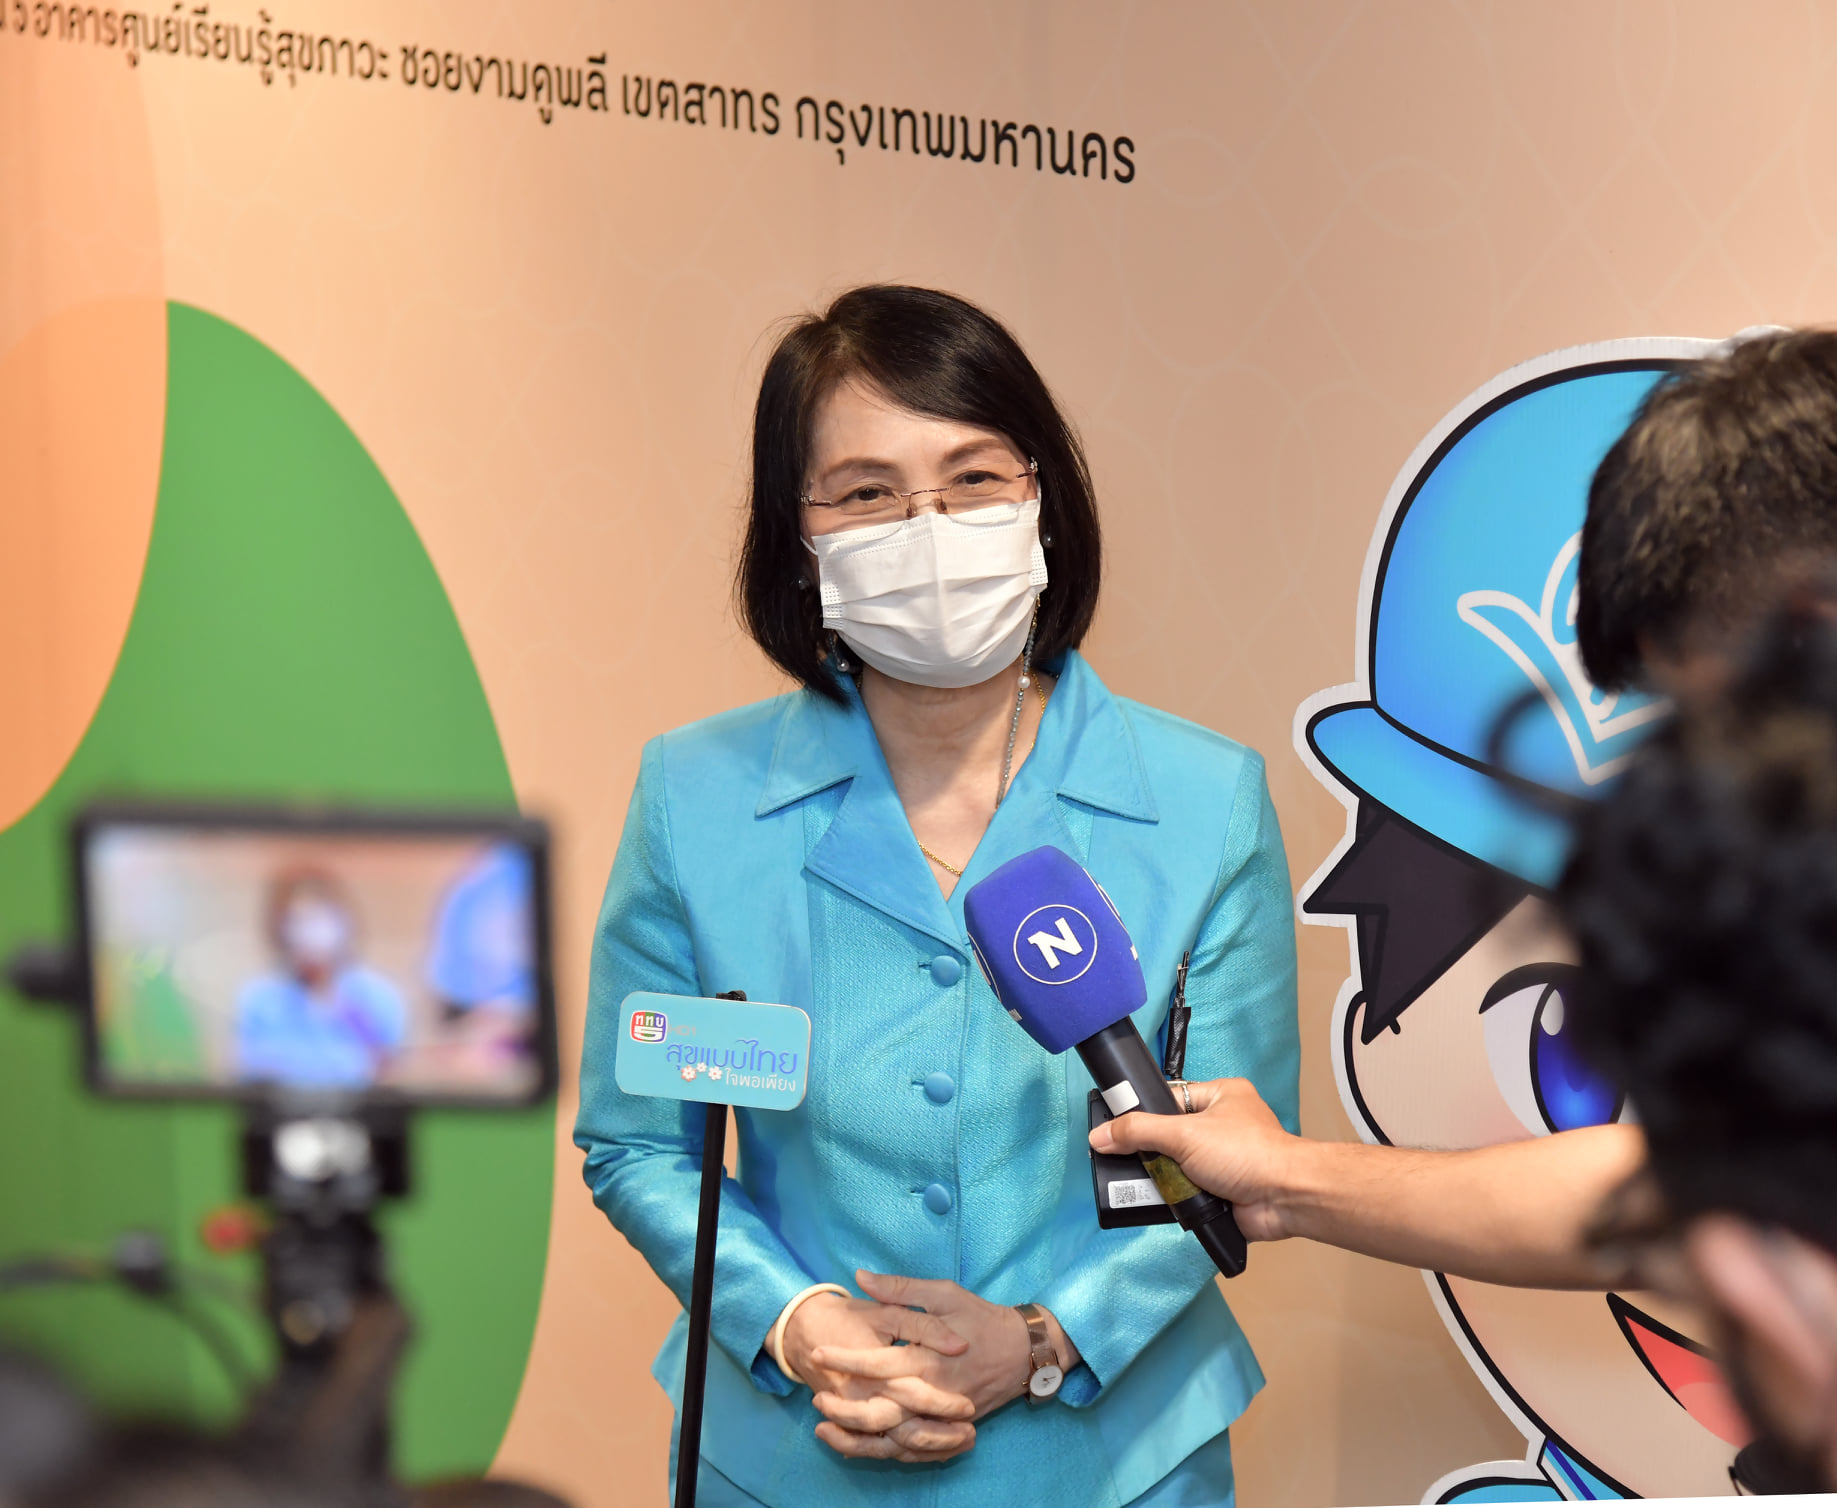 สสช. MOU สสส. ลงนามความราวมมือทางวิชาการ สำรวจพฤติกรรมสุขภาพคนไทย ปี 2564